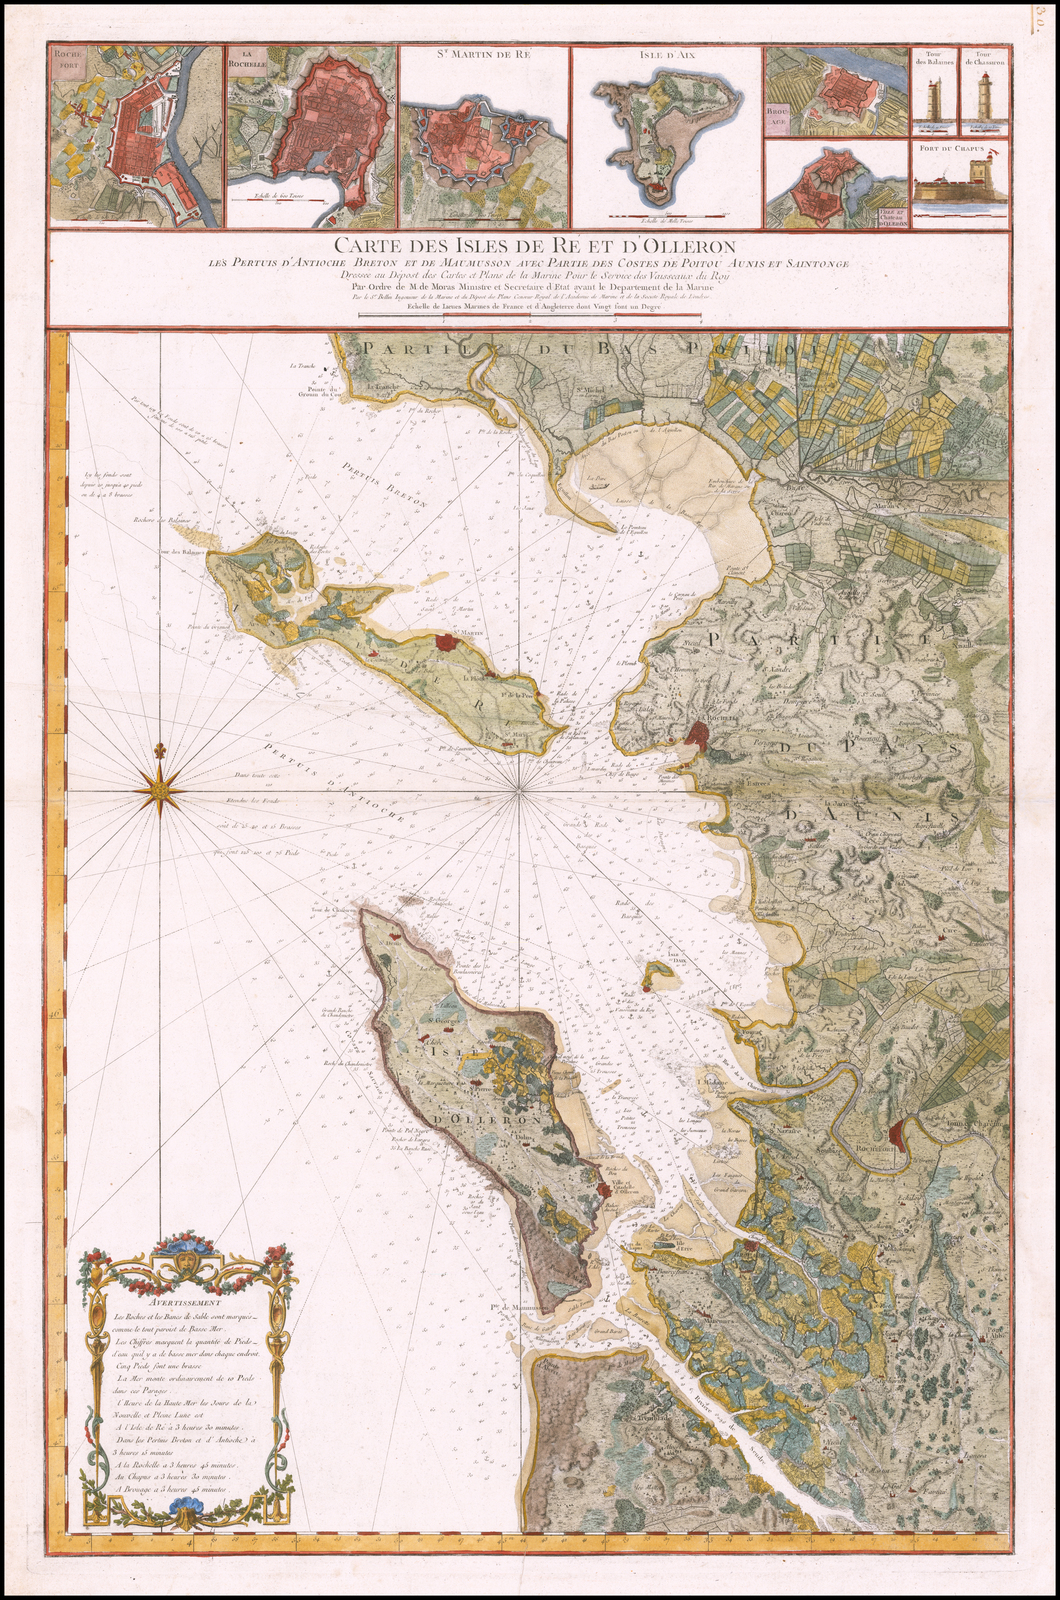 Carte des Isles de Re et d'Olleron les Pertuis d'Antioche Breton et de Maumusson avec Partie des Costes de Poitou Aunis et Saintonge. Paris, circa 1750 © Rare Maps